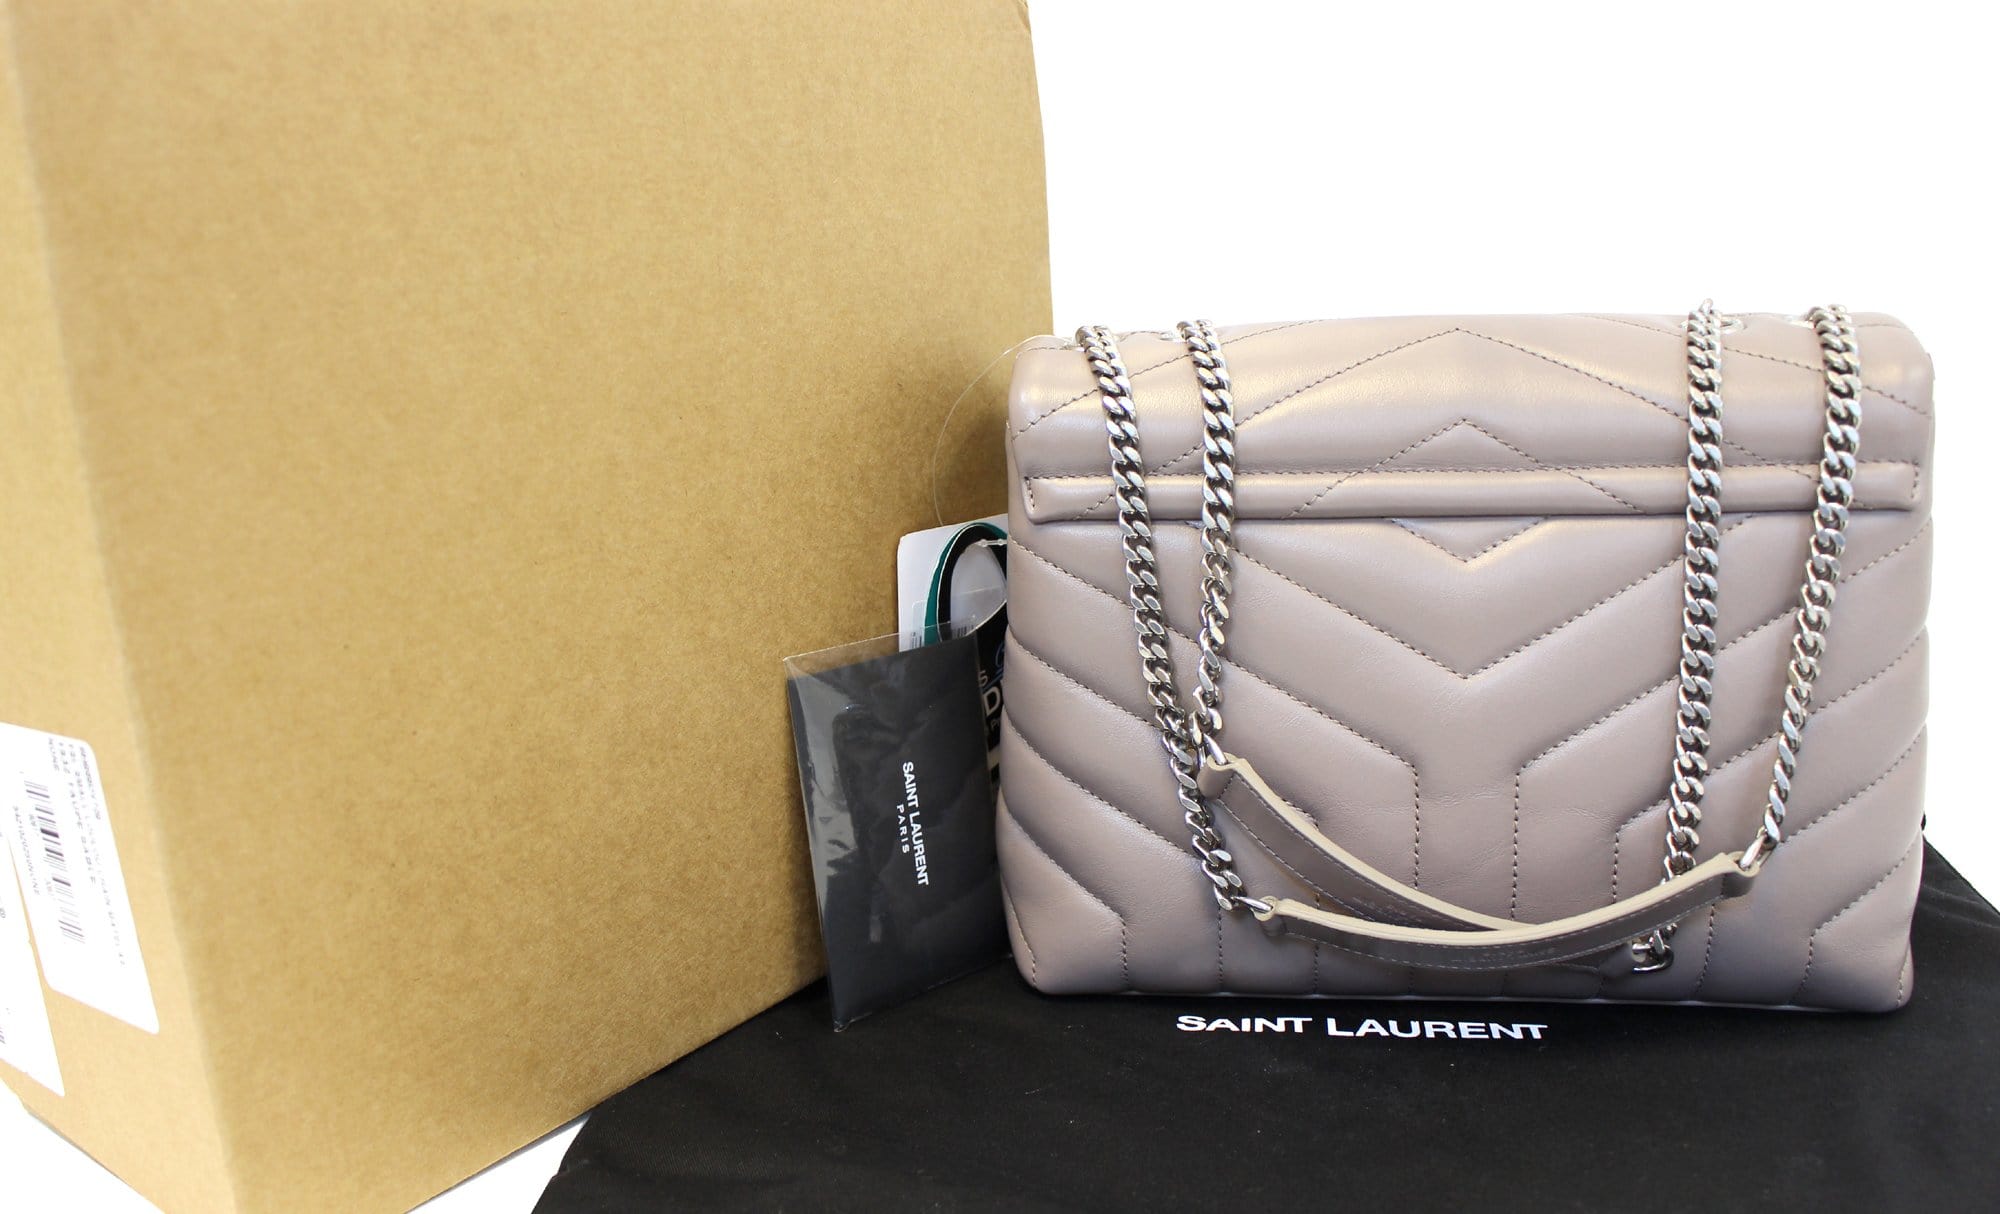 SAINT LAURENT Loulou small leather shoulder bag DEEP TAUPE – Top Quality  Yves Saint Laurent Bags Shop